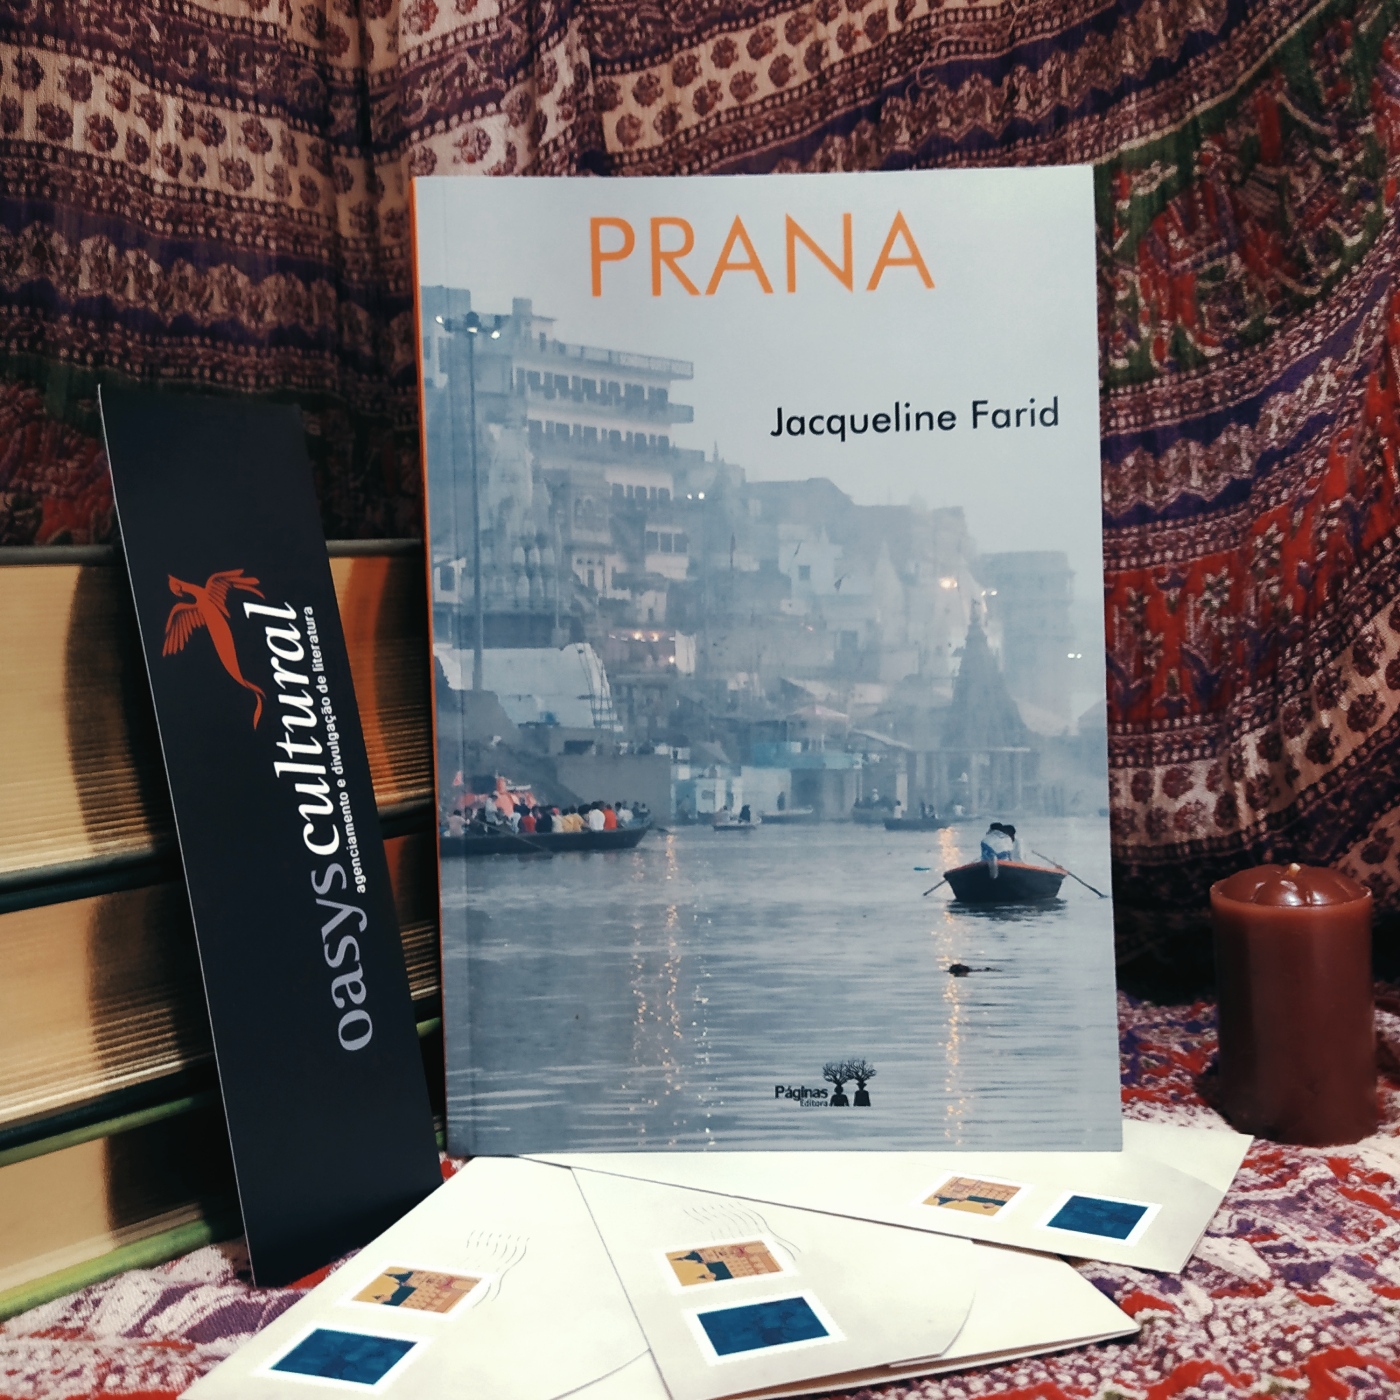 Livro Prana apoiado em uma pilha de livros, com um marcador da Oasys Cultural à esquerda e uma vela à direita. Abaixo, há três envelopes de cartas com selos. Ao fundo, há um tecido com tema que remete à Índia.